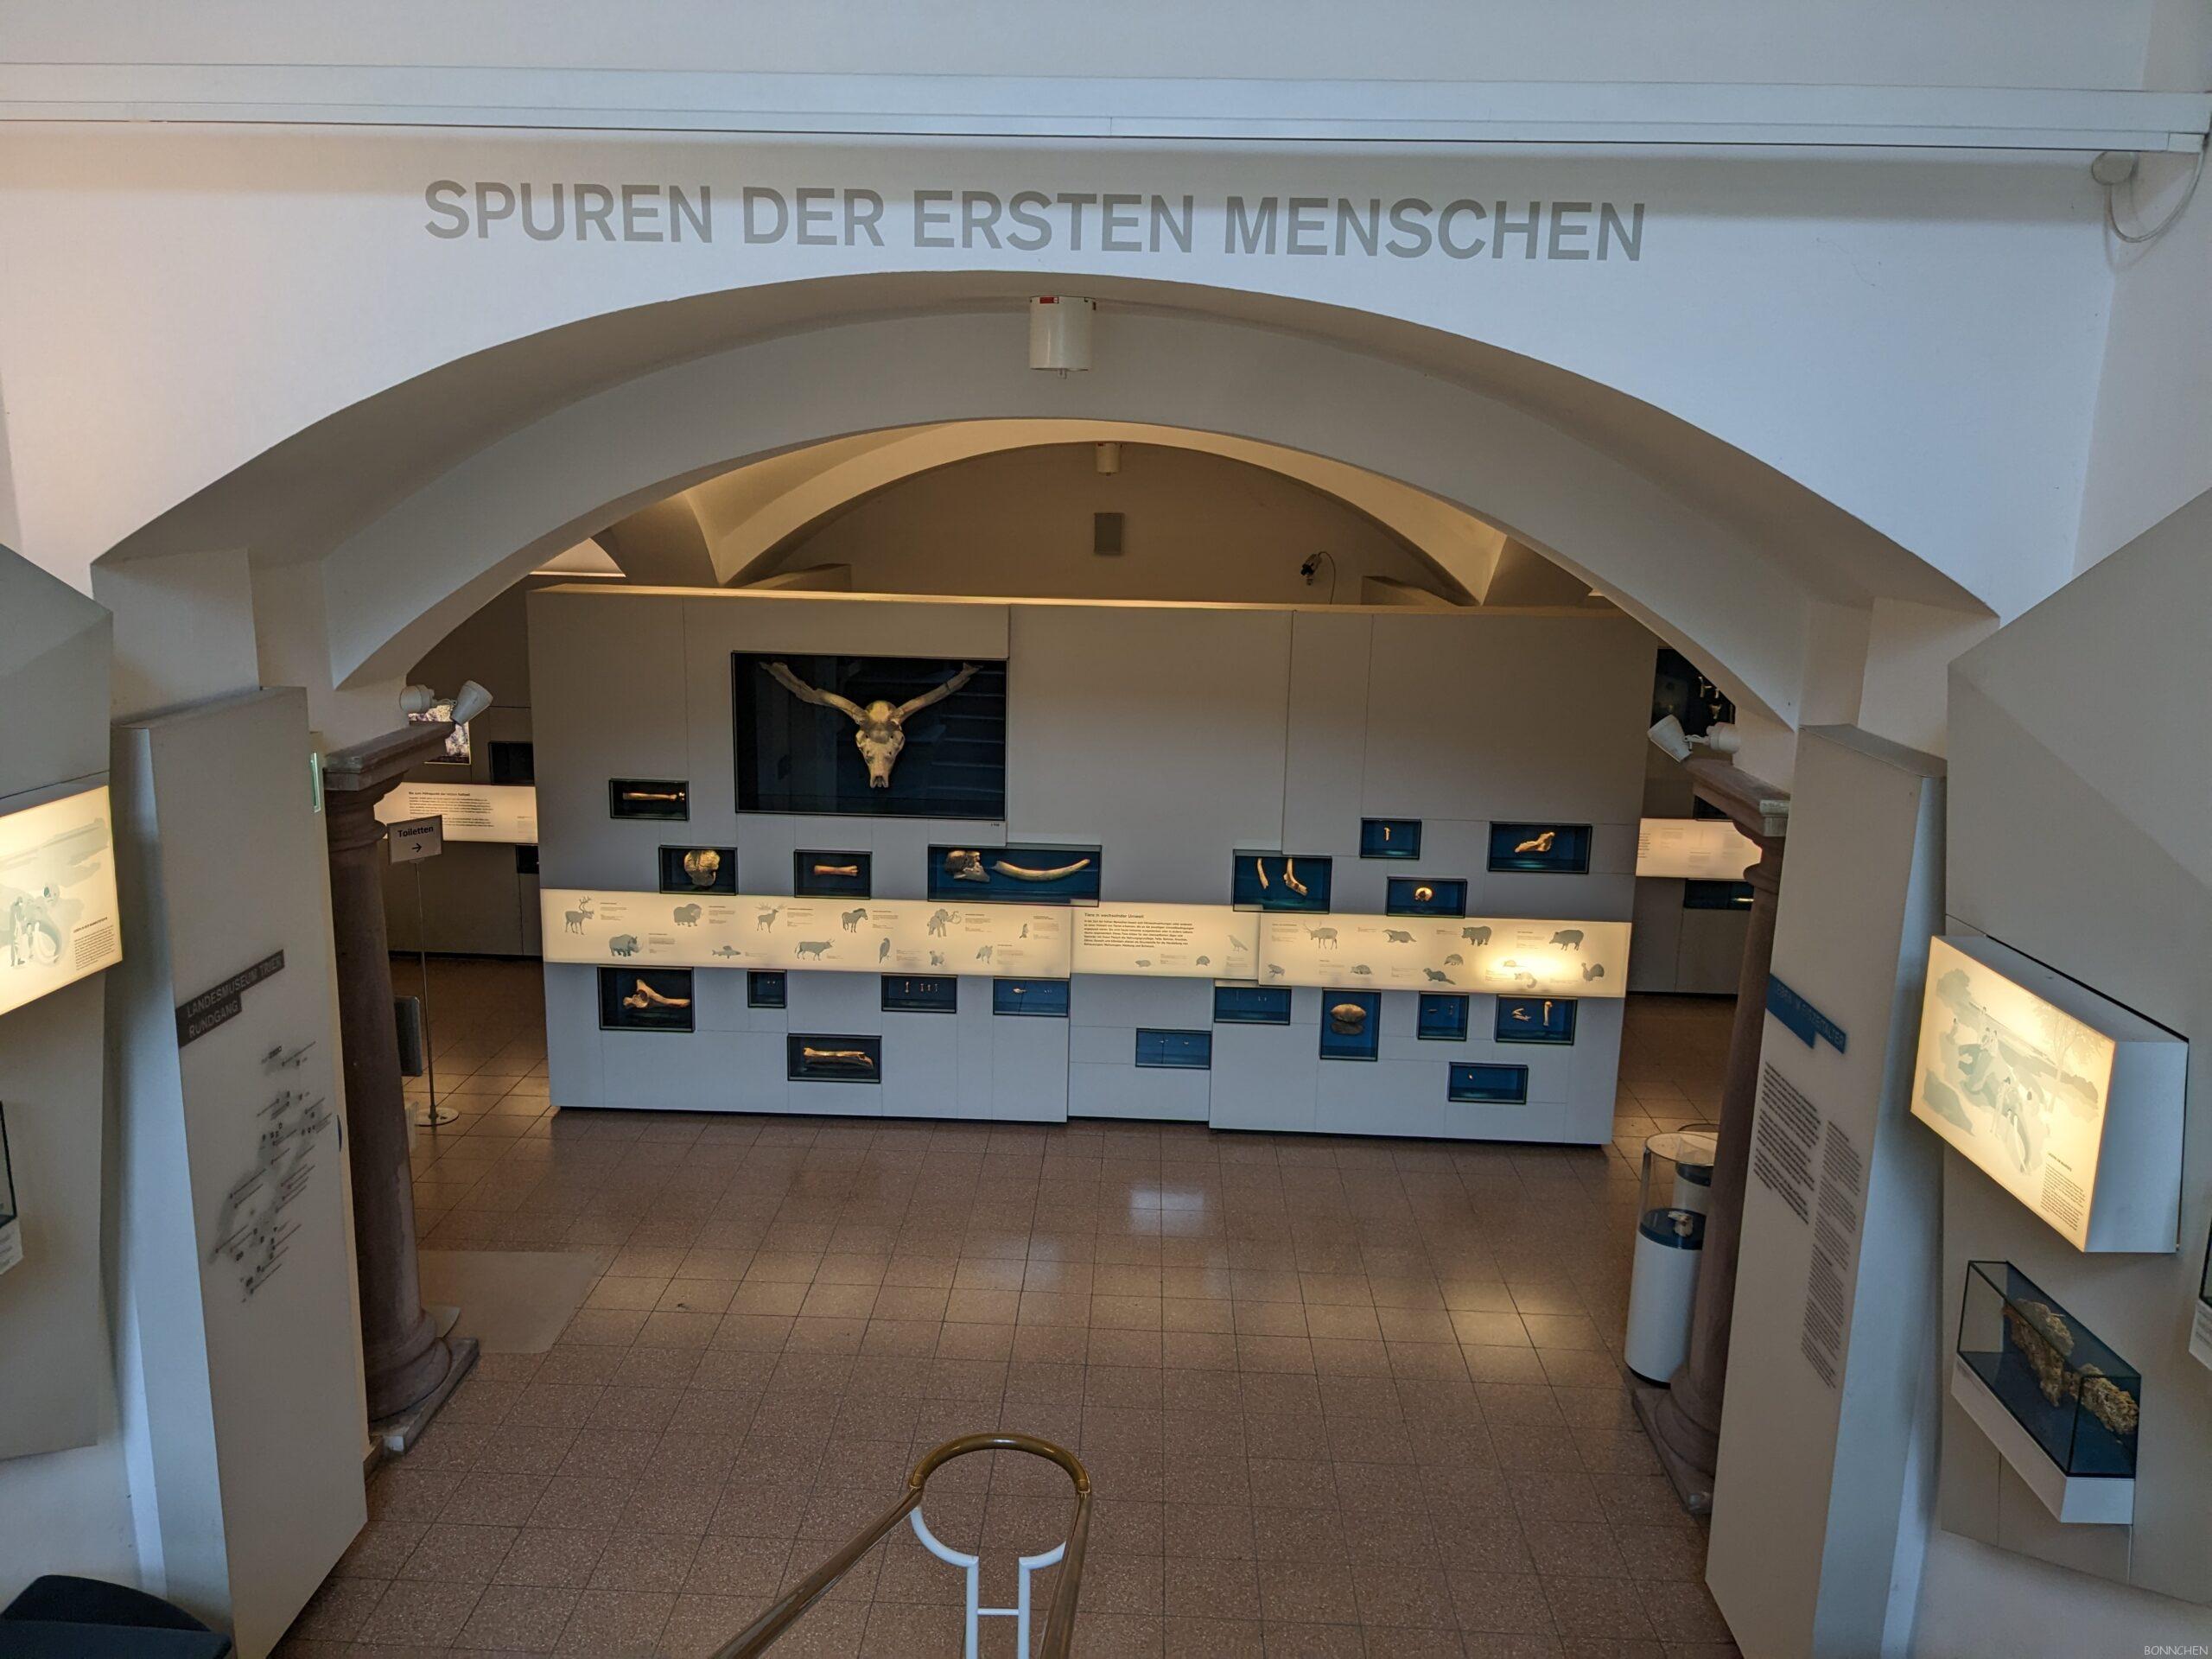 050 rheinisches landesmuseum trier erste menschen scaled